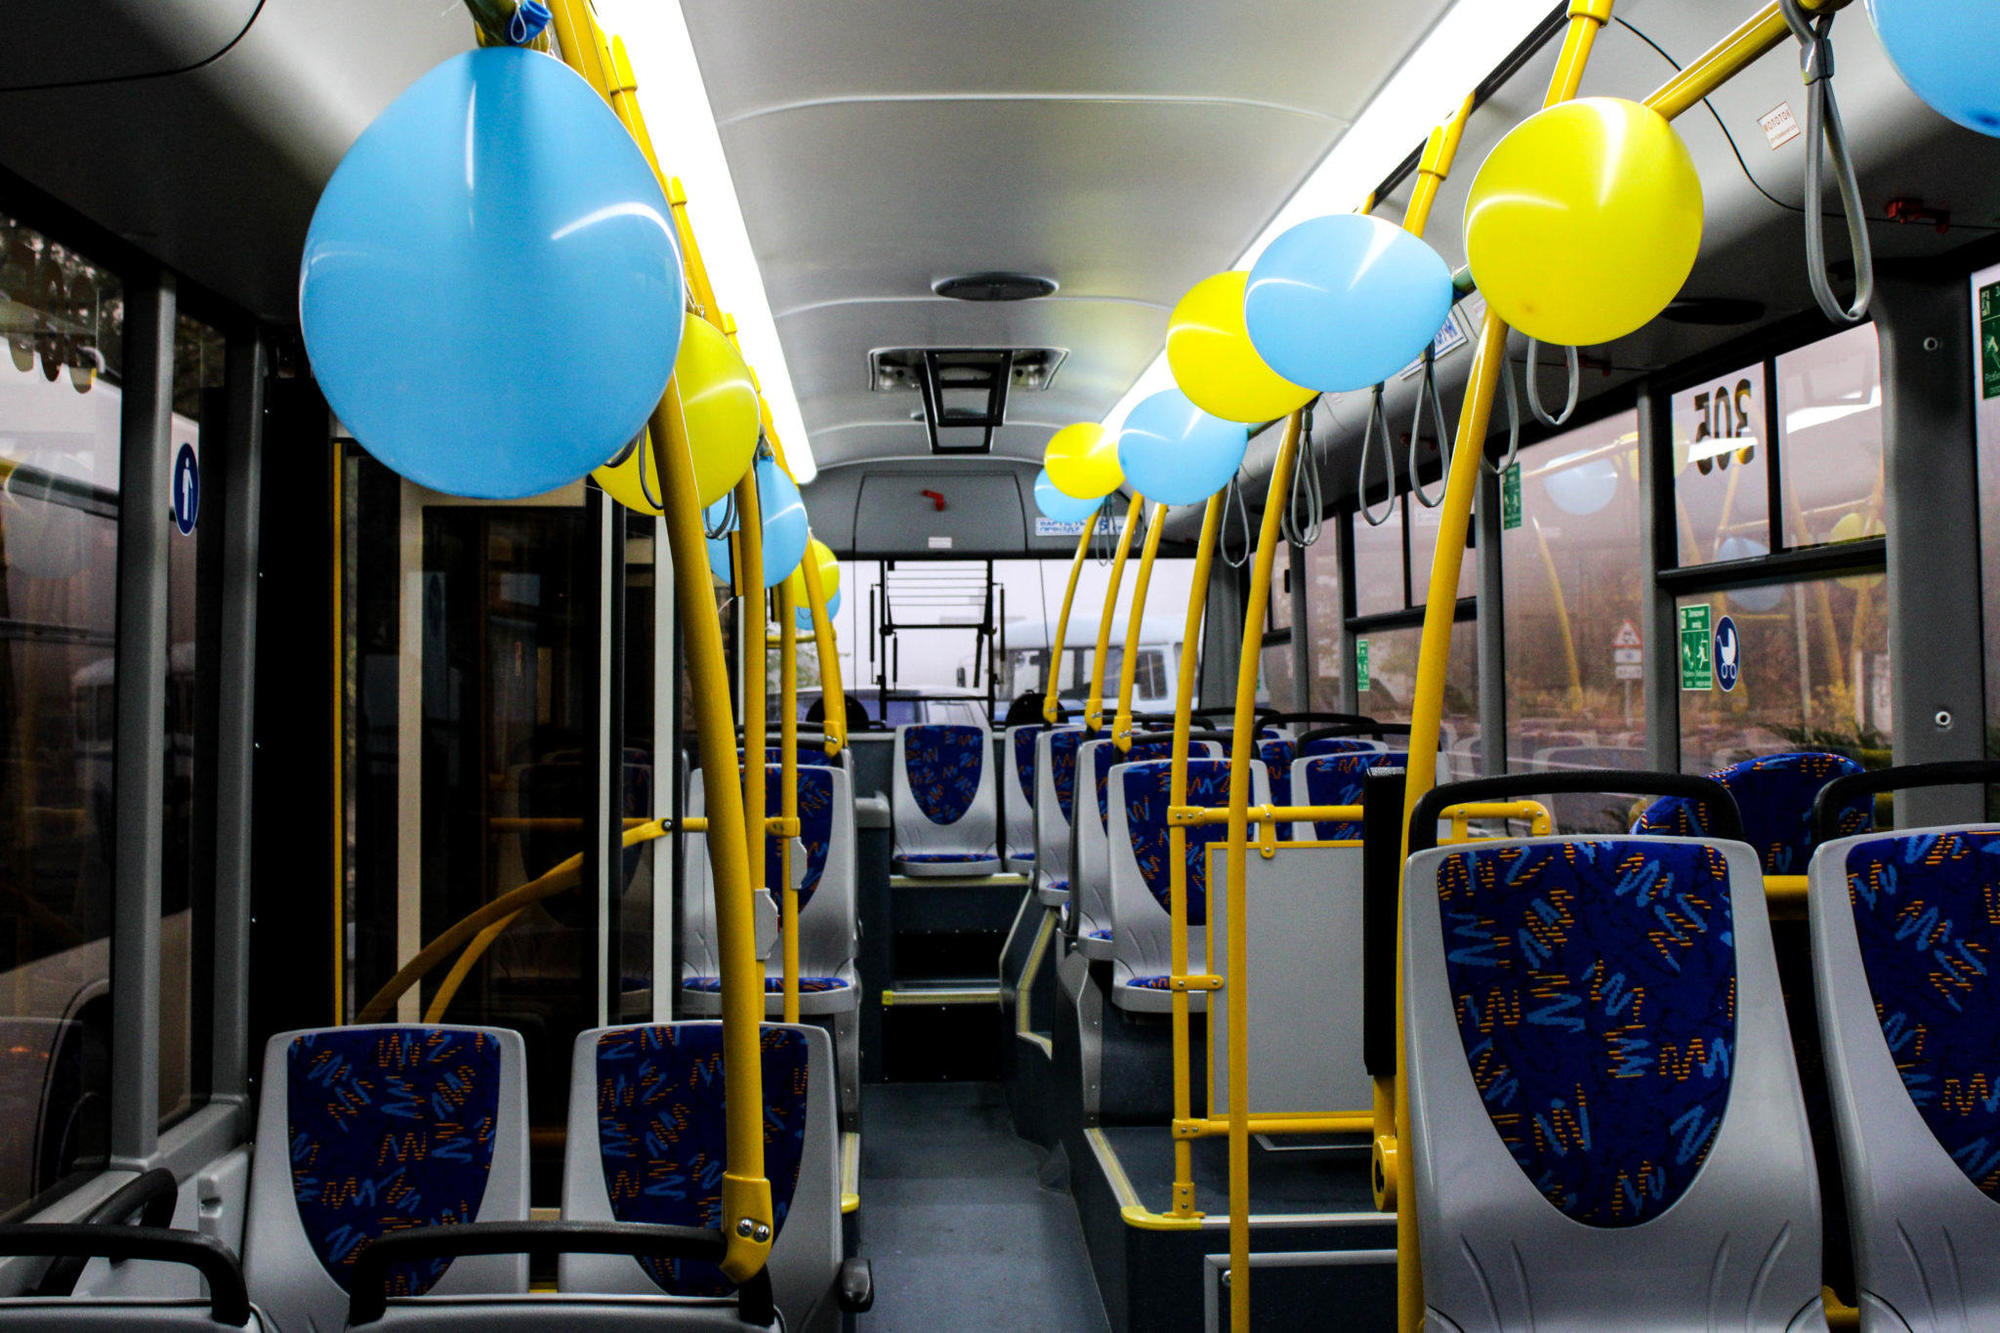 “Чекали 40 років”: в Бахмутській ОТГ відкрили тролейбусний маршрут до селища Опитне (Фото, розклад) 1